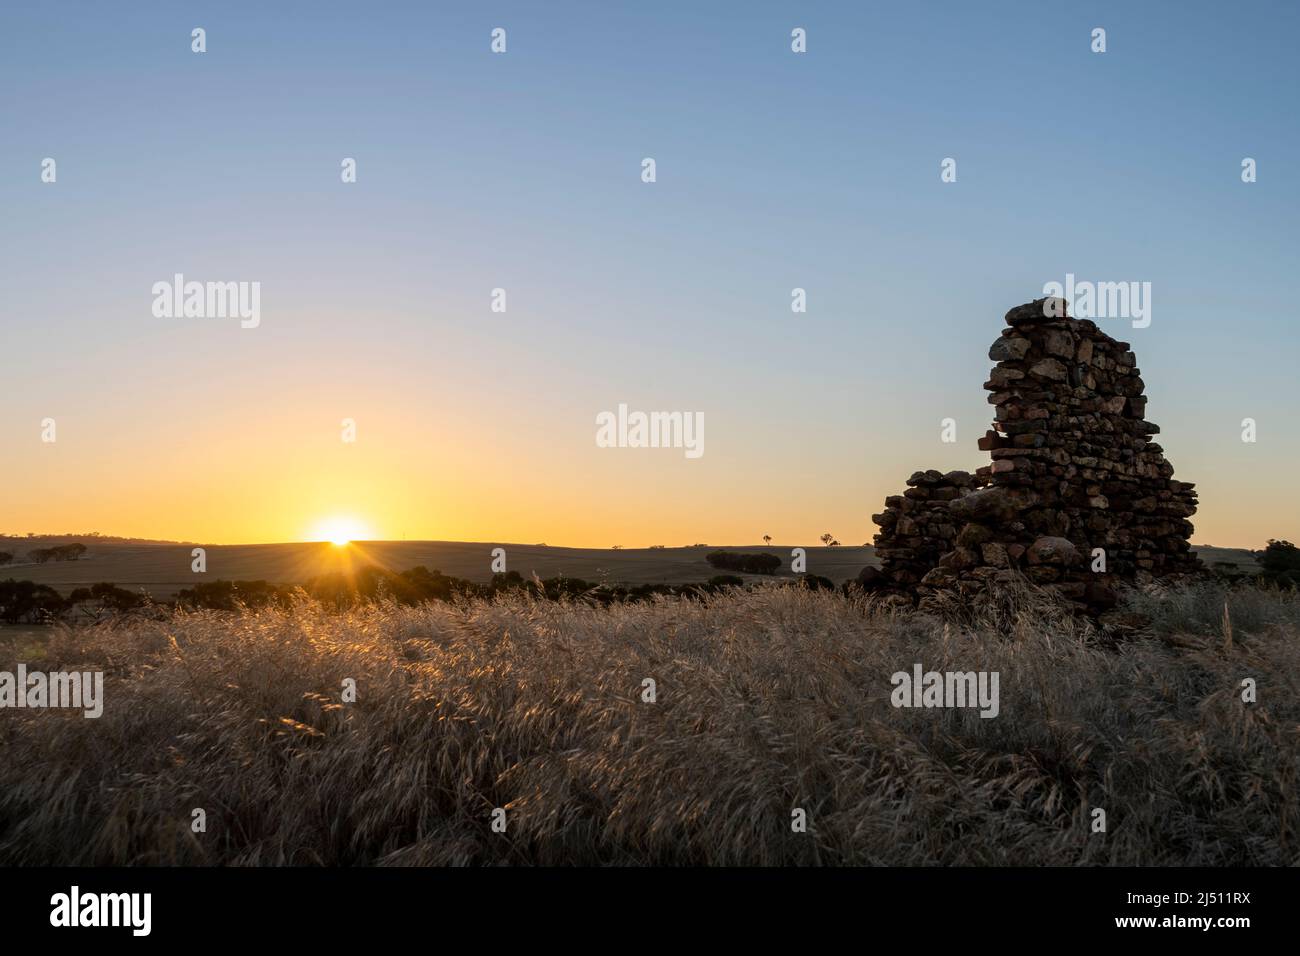 Coucher de soleil dans la ceinture de blé de l'Australie occidentale avec ruines de pierre ancienne en premier plan. Banque D'Images